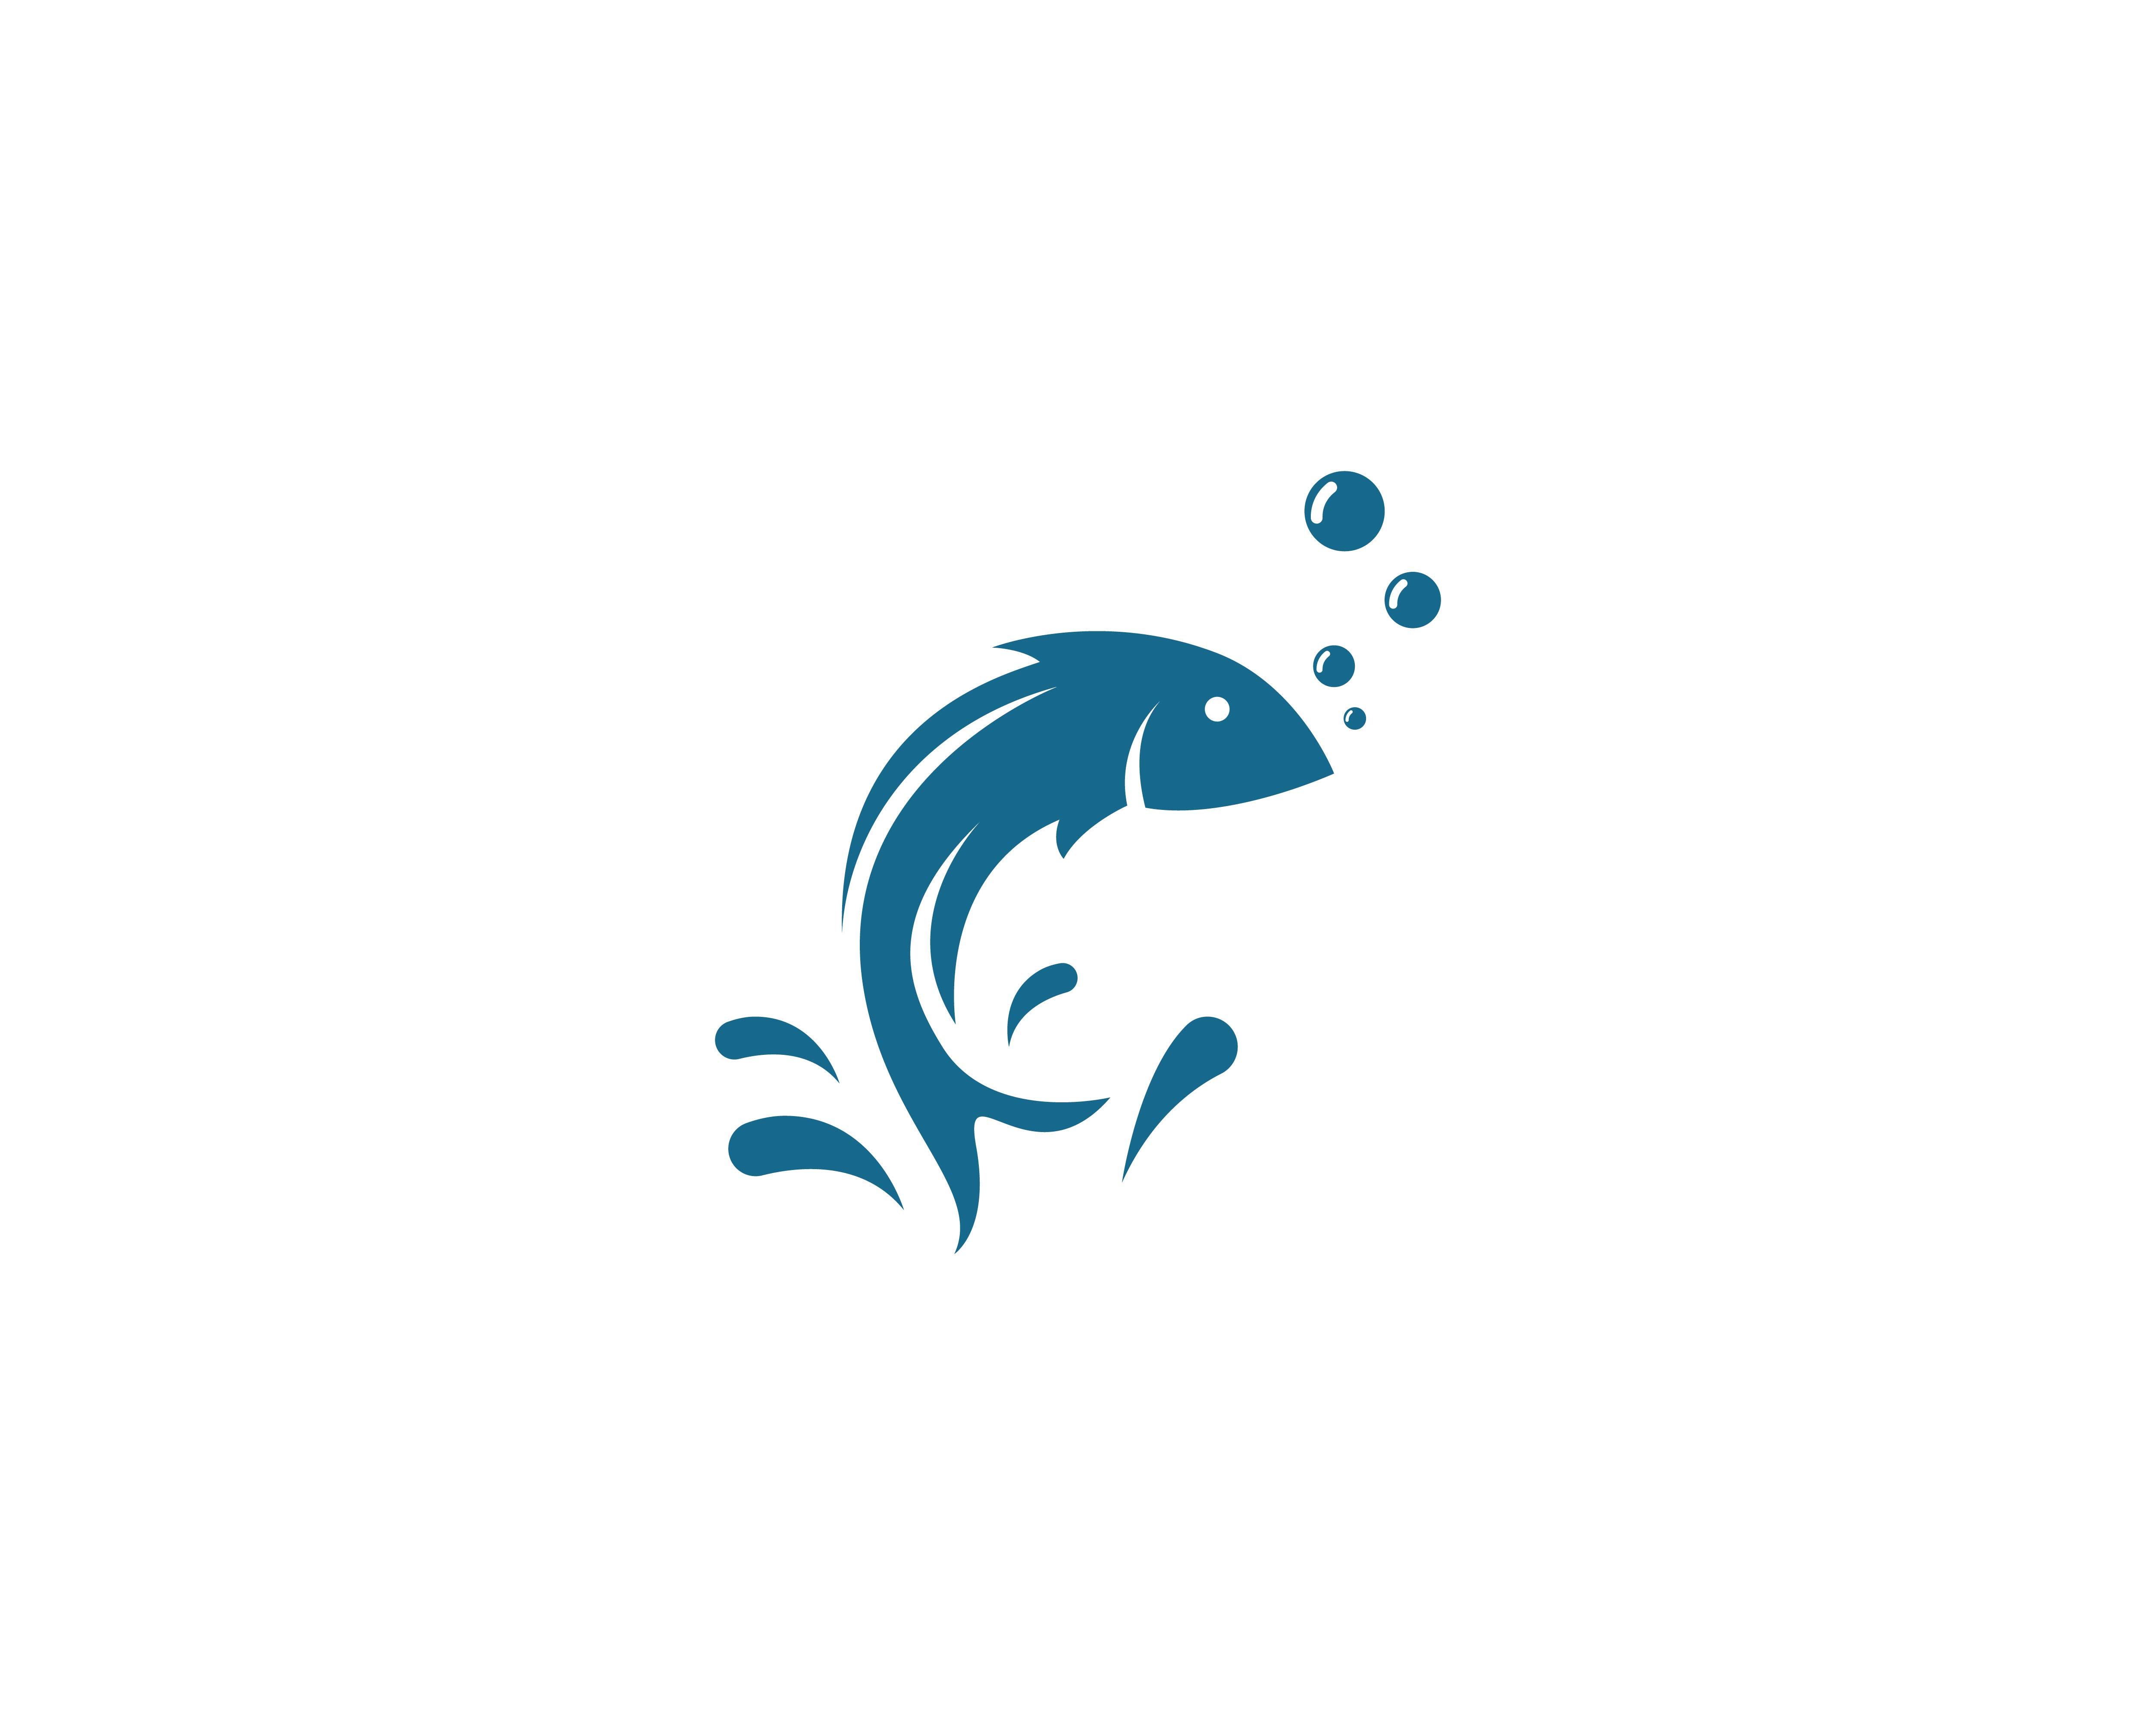 魚 logo 免費下載 | 天天瘋後製